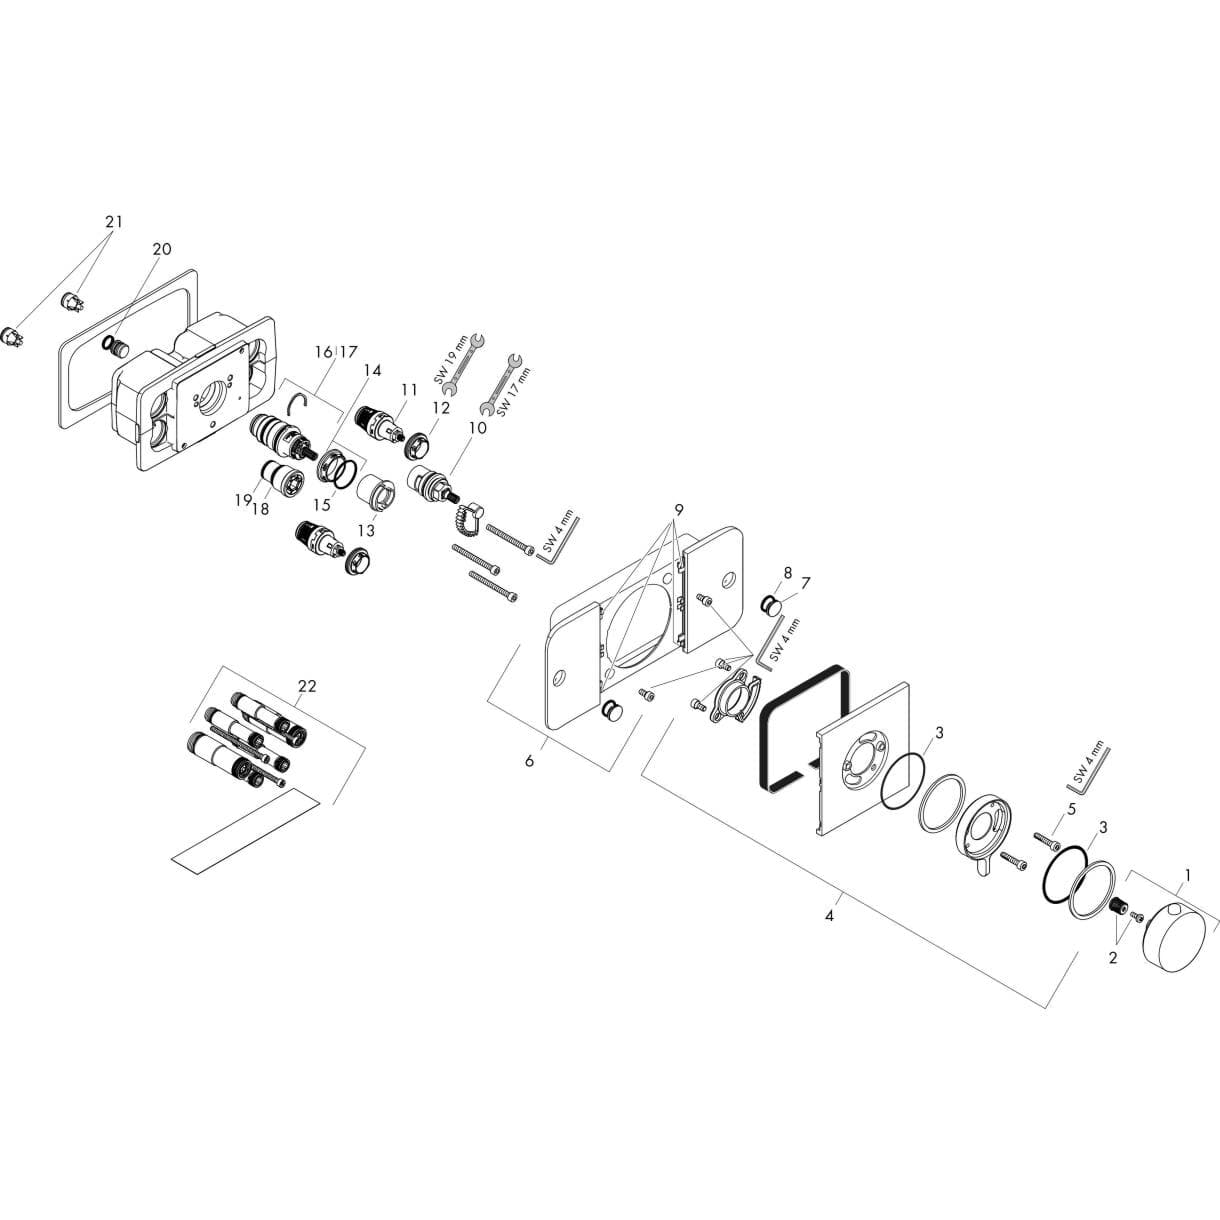 HANSGROHE AXOR One Termostatik modül ankastre montaj, 2 çıkış için #45712000 - Krom resmi